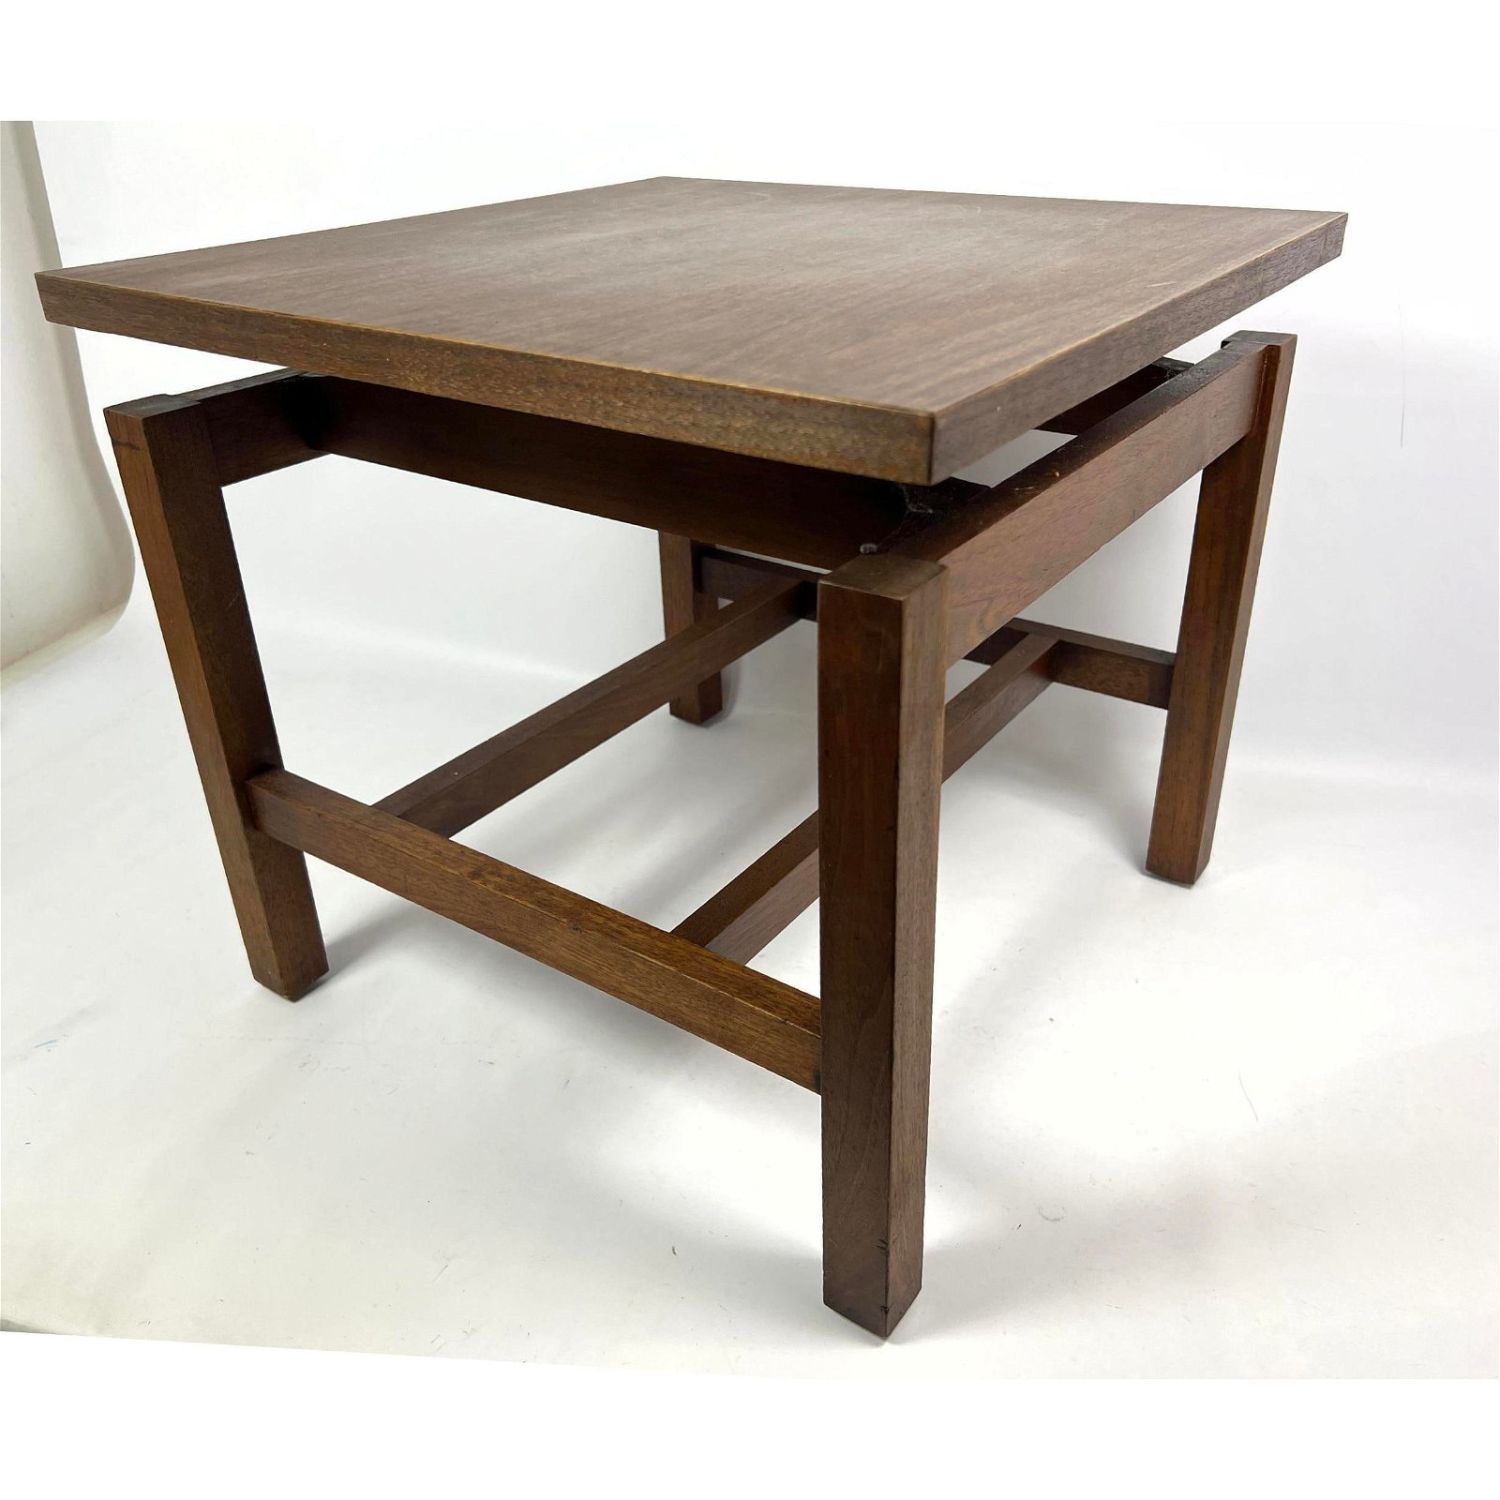 American Walnut low side table